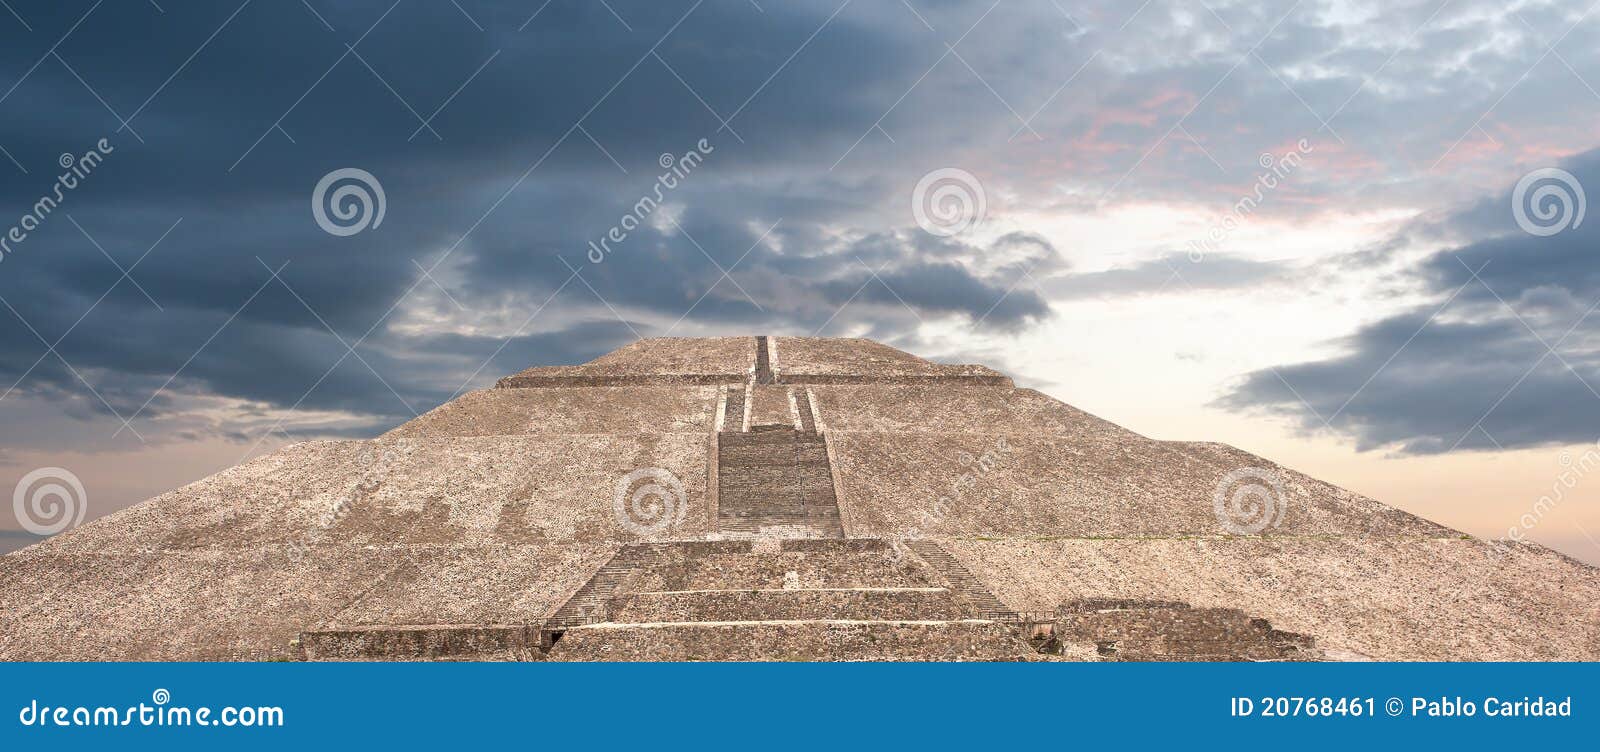 teotihuacan pyramid of the sun.